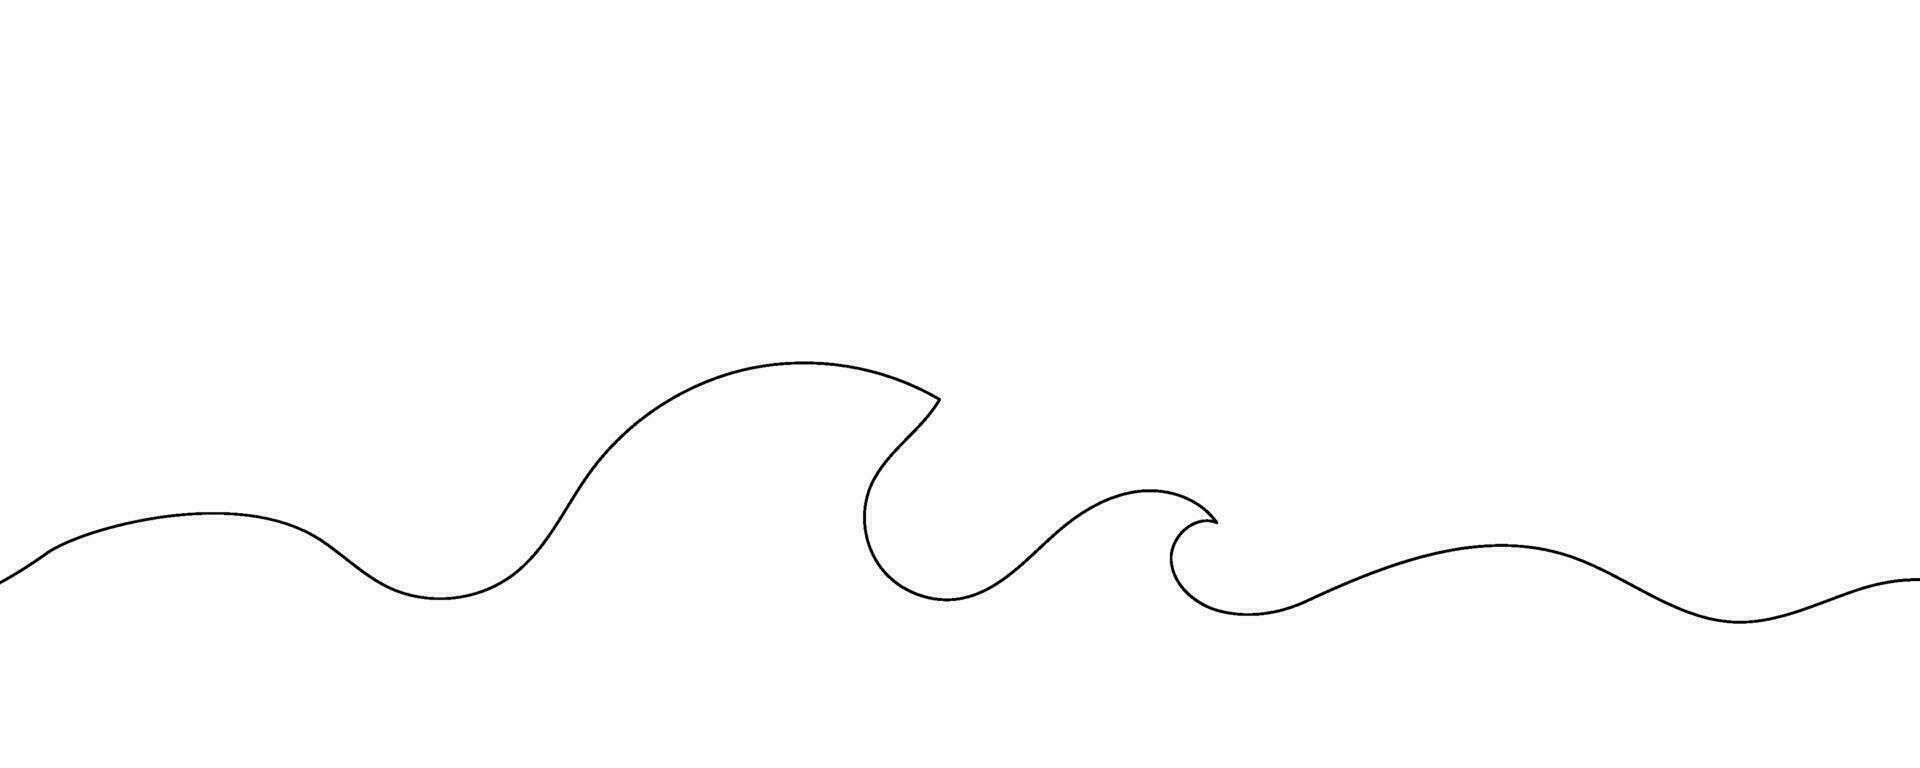 Vinka hav hav konst vatten översikt ikon logotyp skiss kontinuerlig linje. hav storm Vinka grafisk surfa hav abstrakt ett modern klotter symbol dekorativ teckning stänk natur design. vektor illustration